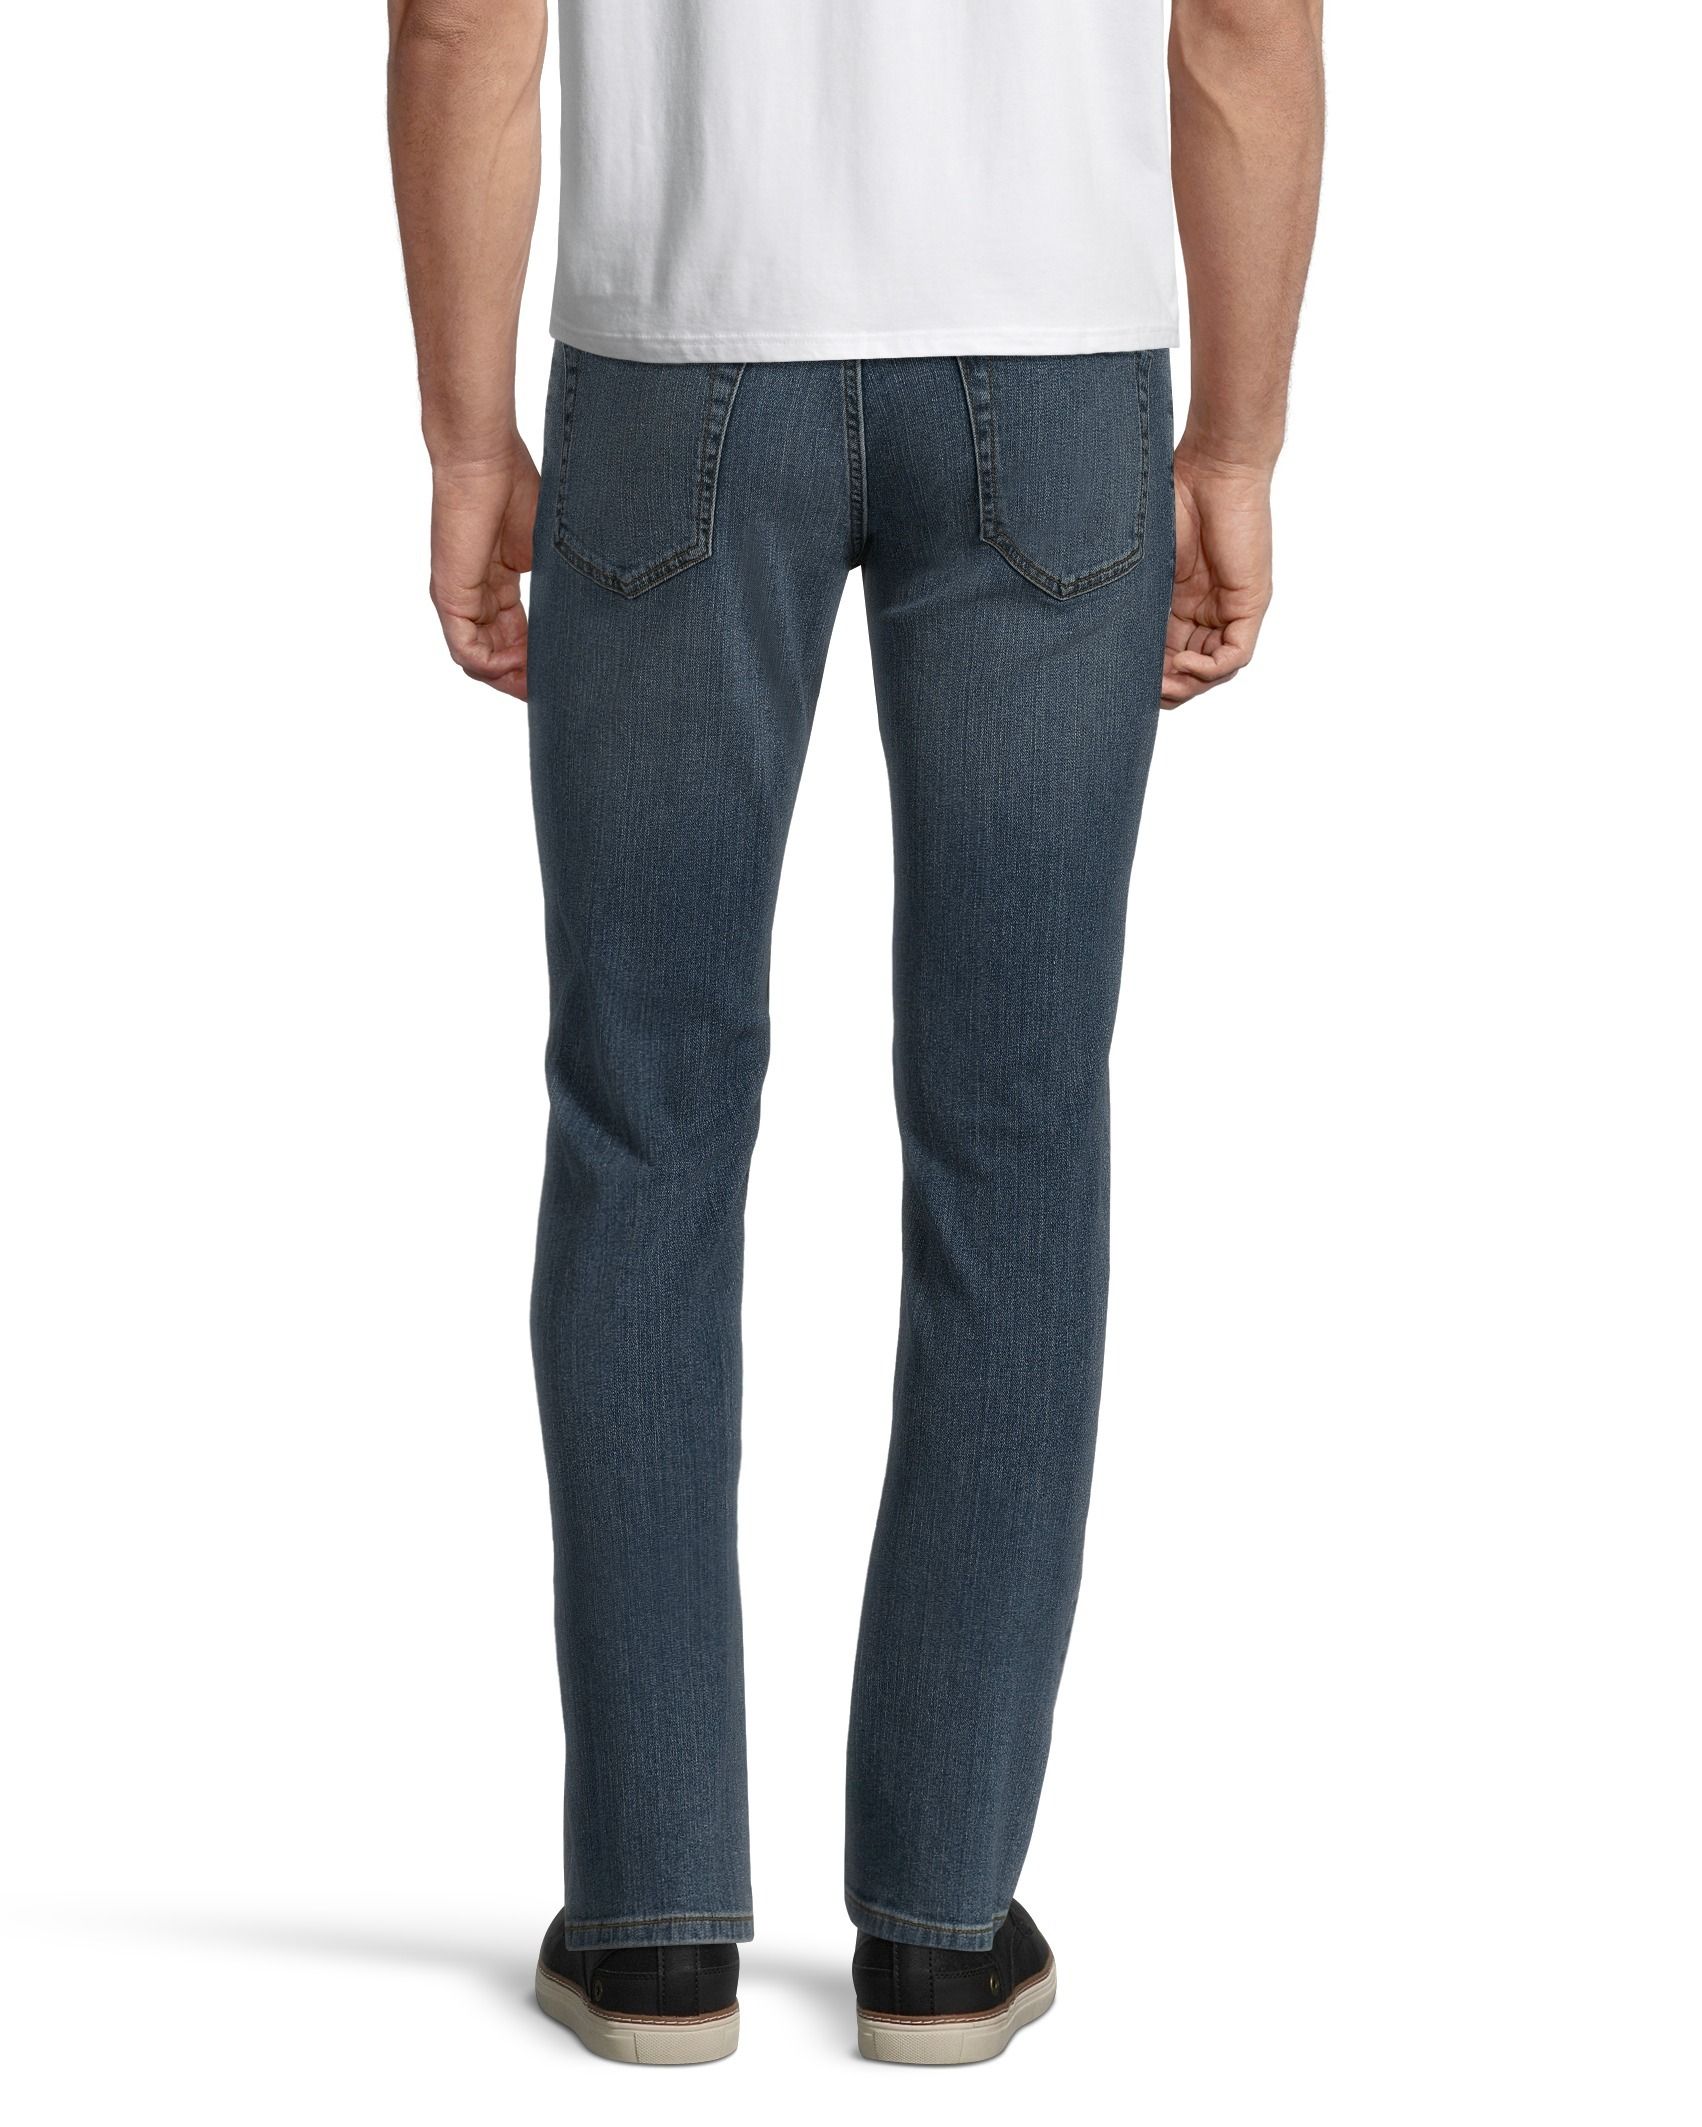 J Brand Spandex Slim Jeans for Men